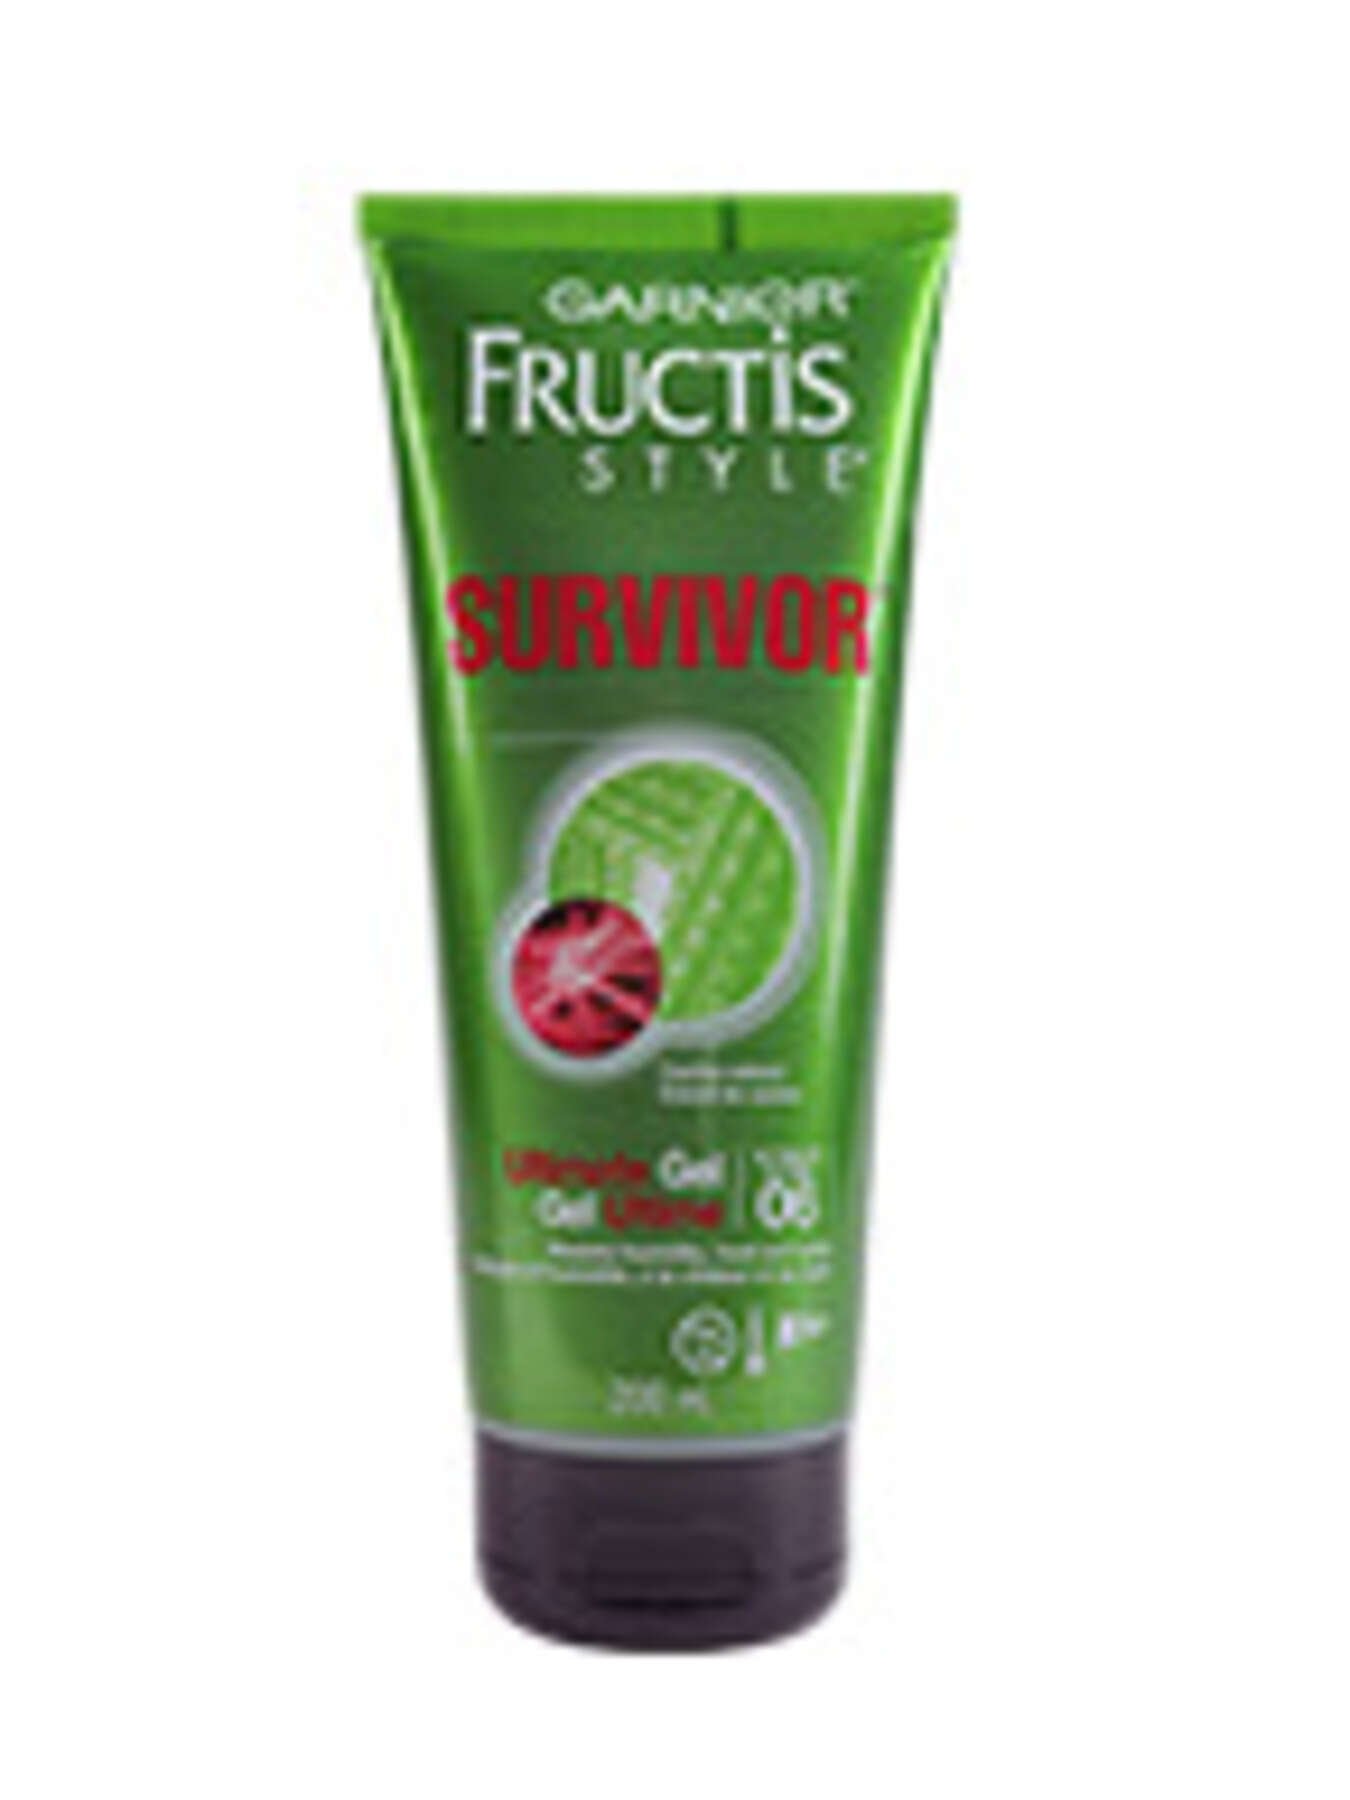 garnier hair jelly fructis style survivor survivor gel 200 ml 3600541018761 t1